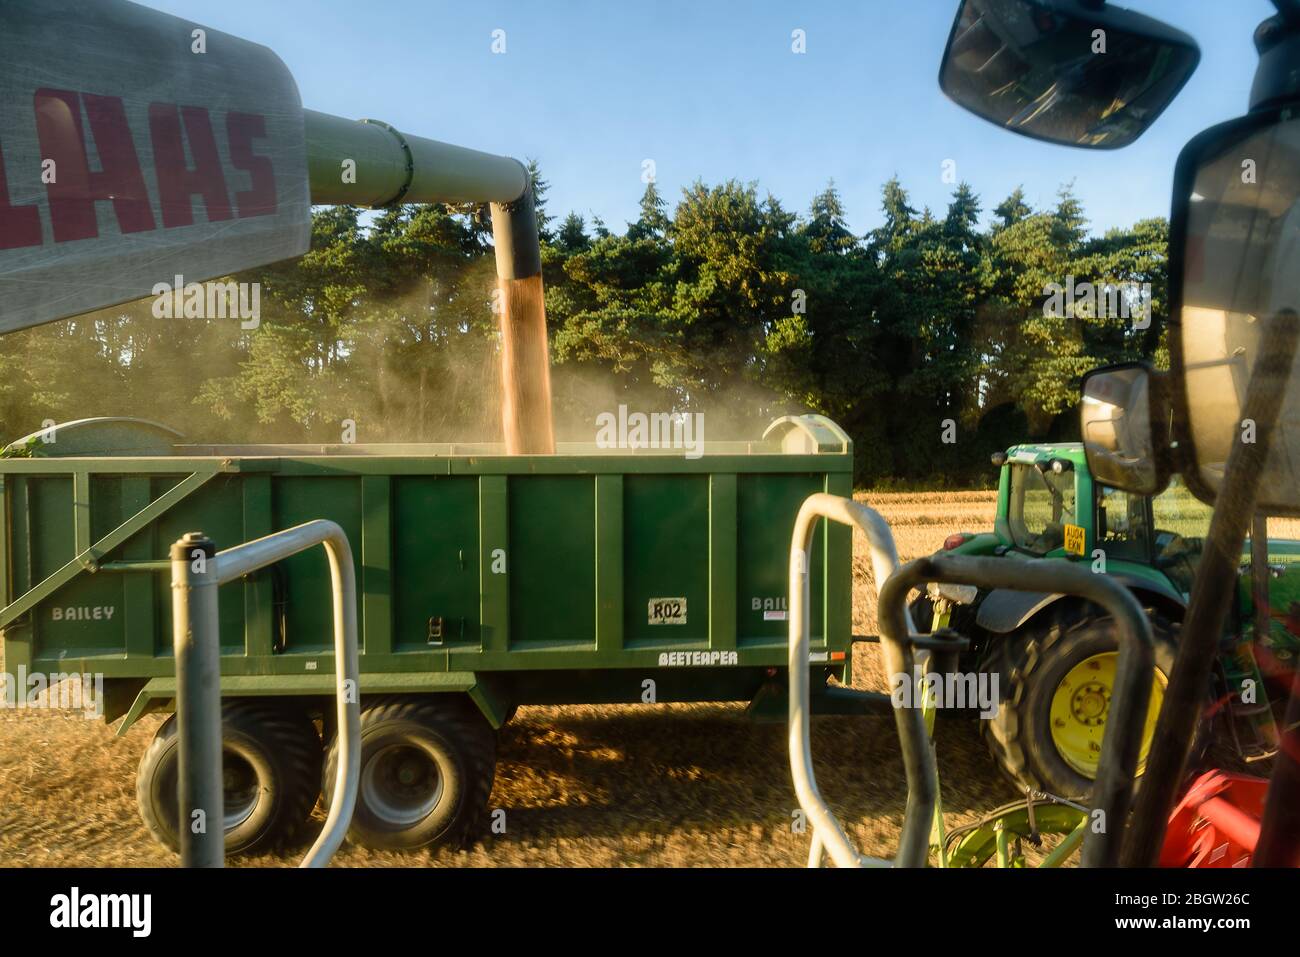 Moissonneuse-batteuse XI. Vue depuis la cabine, chargement de la remorque du tracteur - Salhouse, août 2016 Banque D'Images